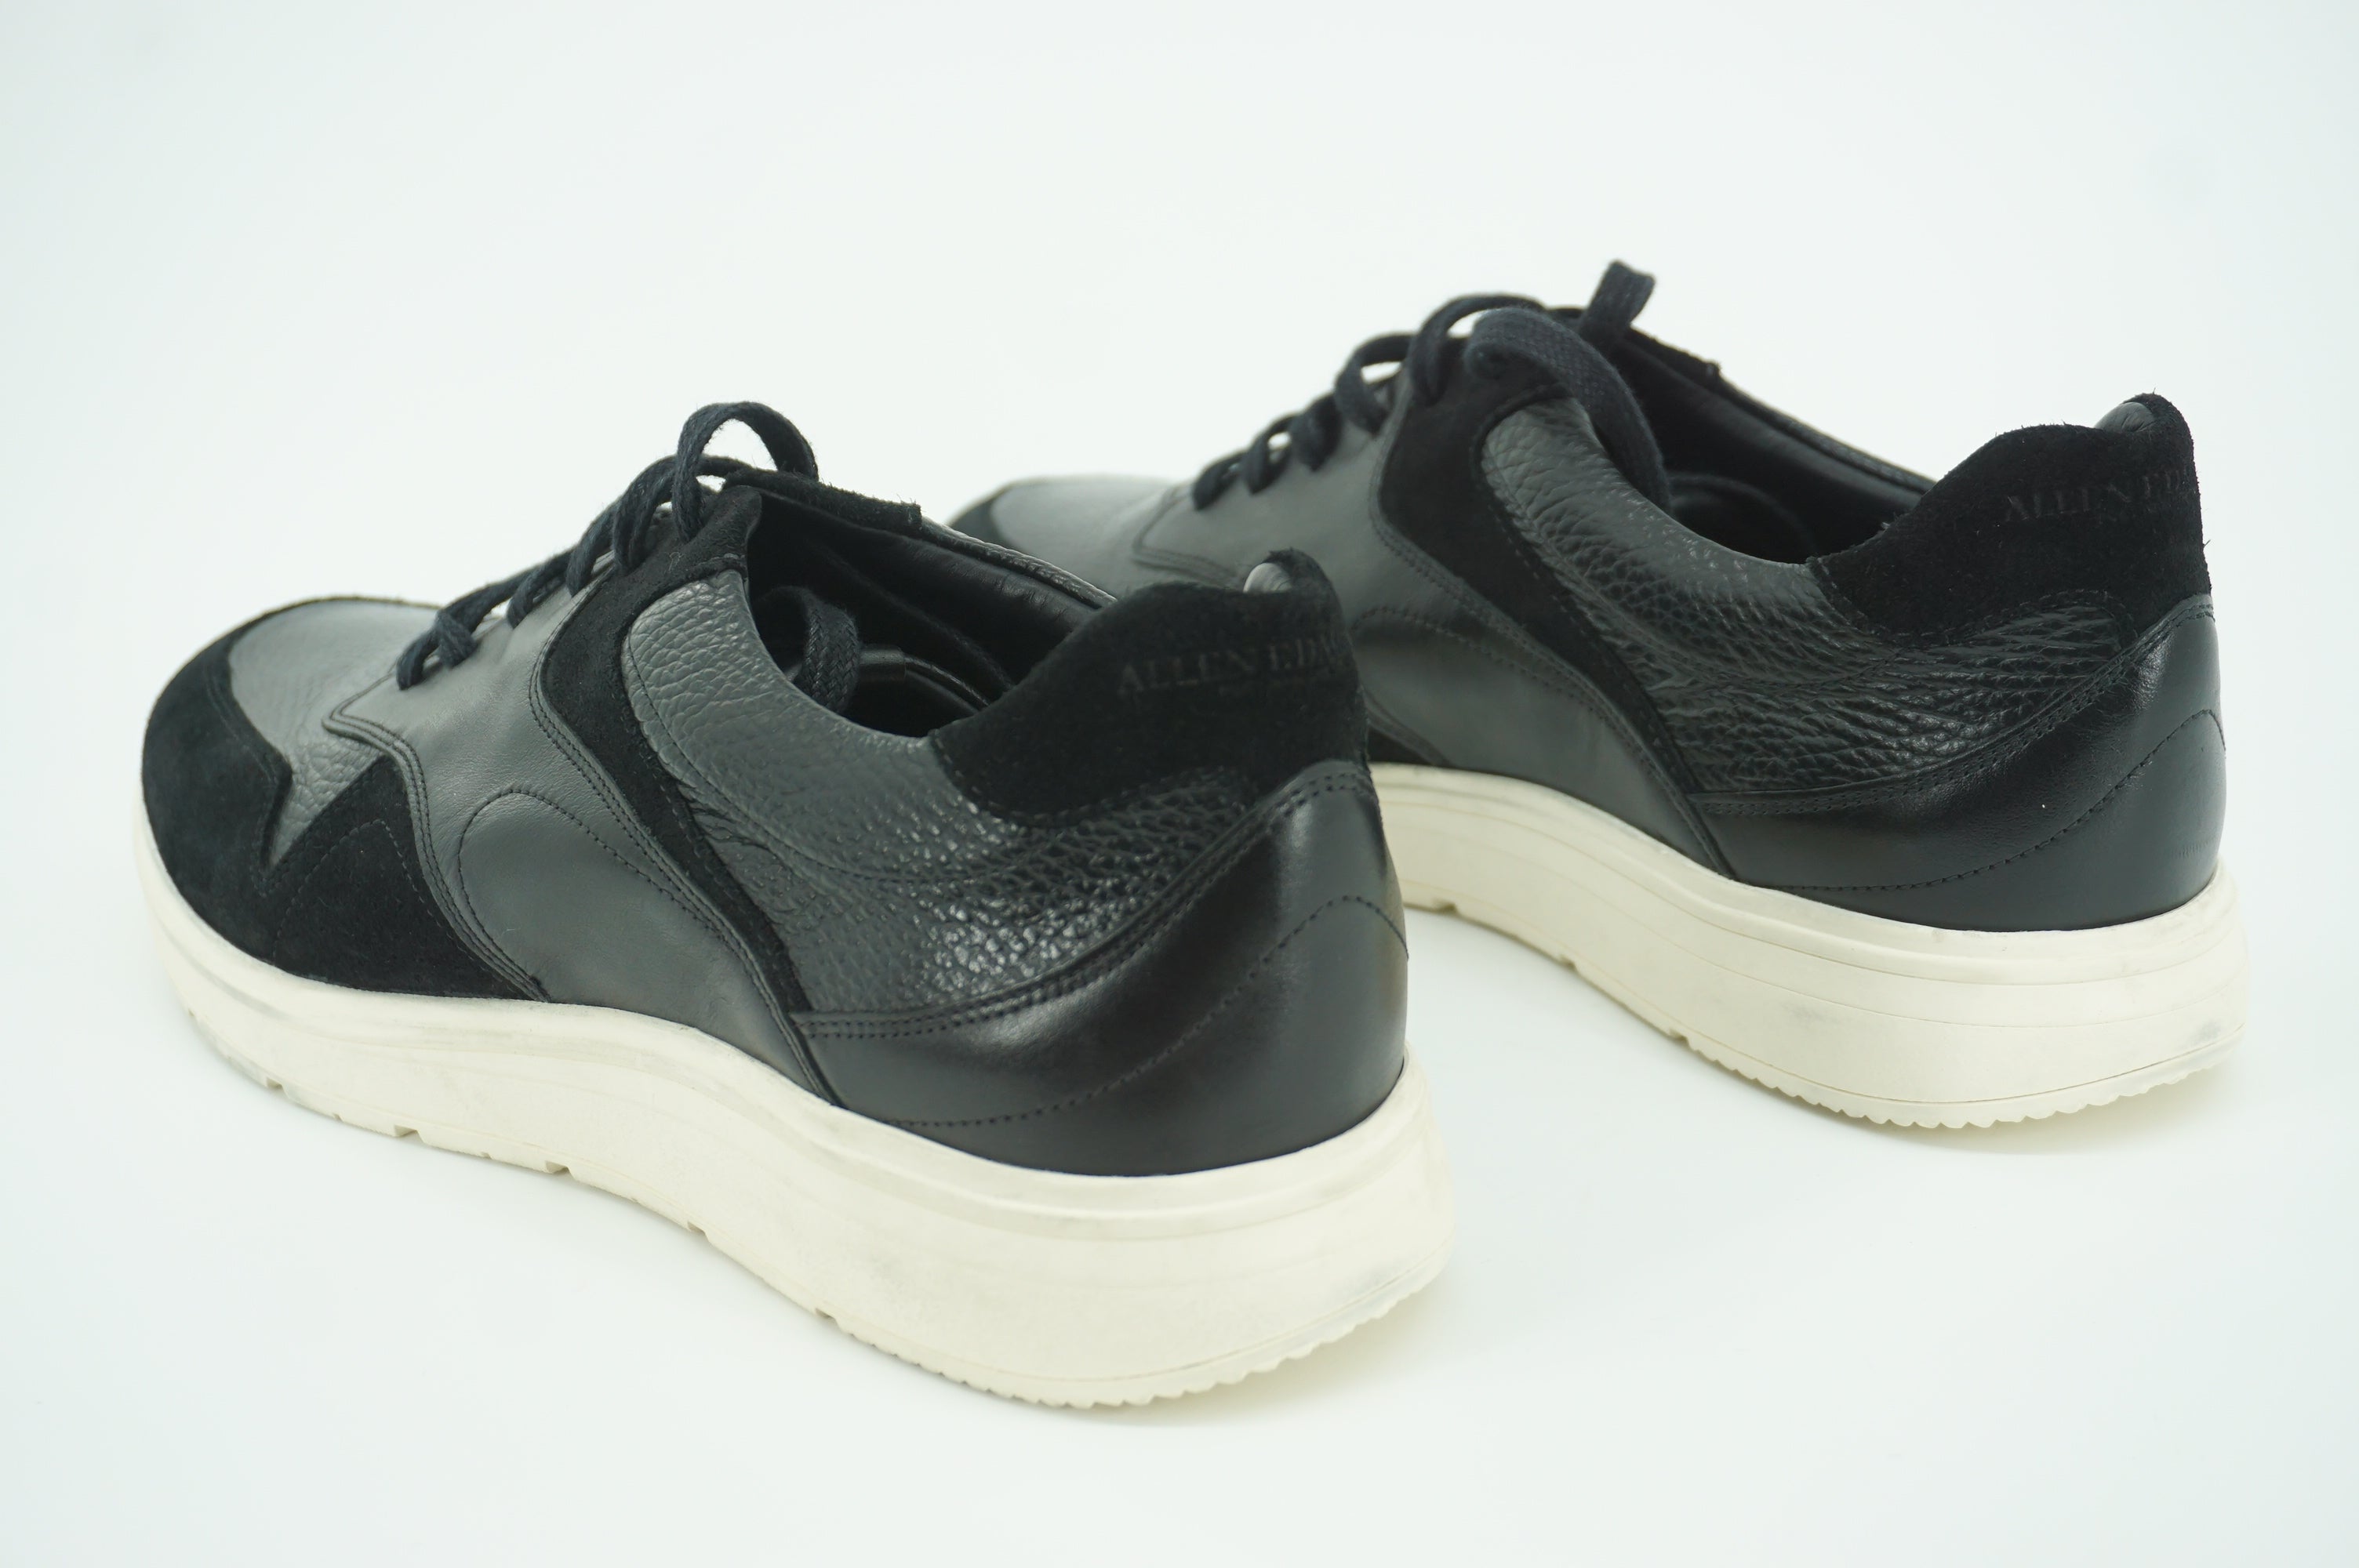 Allen Edmonds Osborn Black Leather Sneaker Shoe Size 11 New Dress